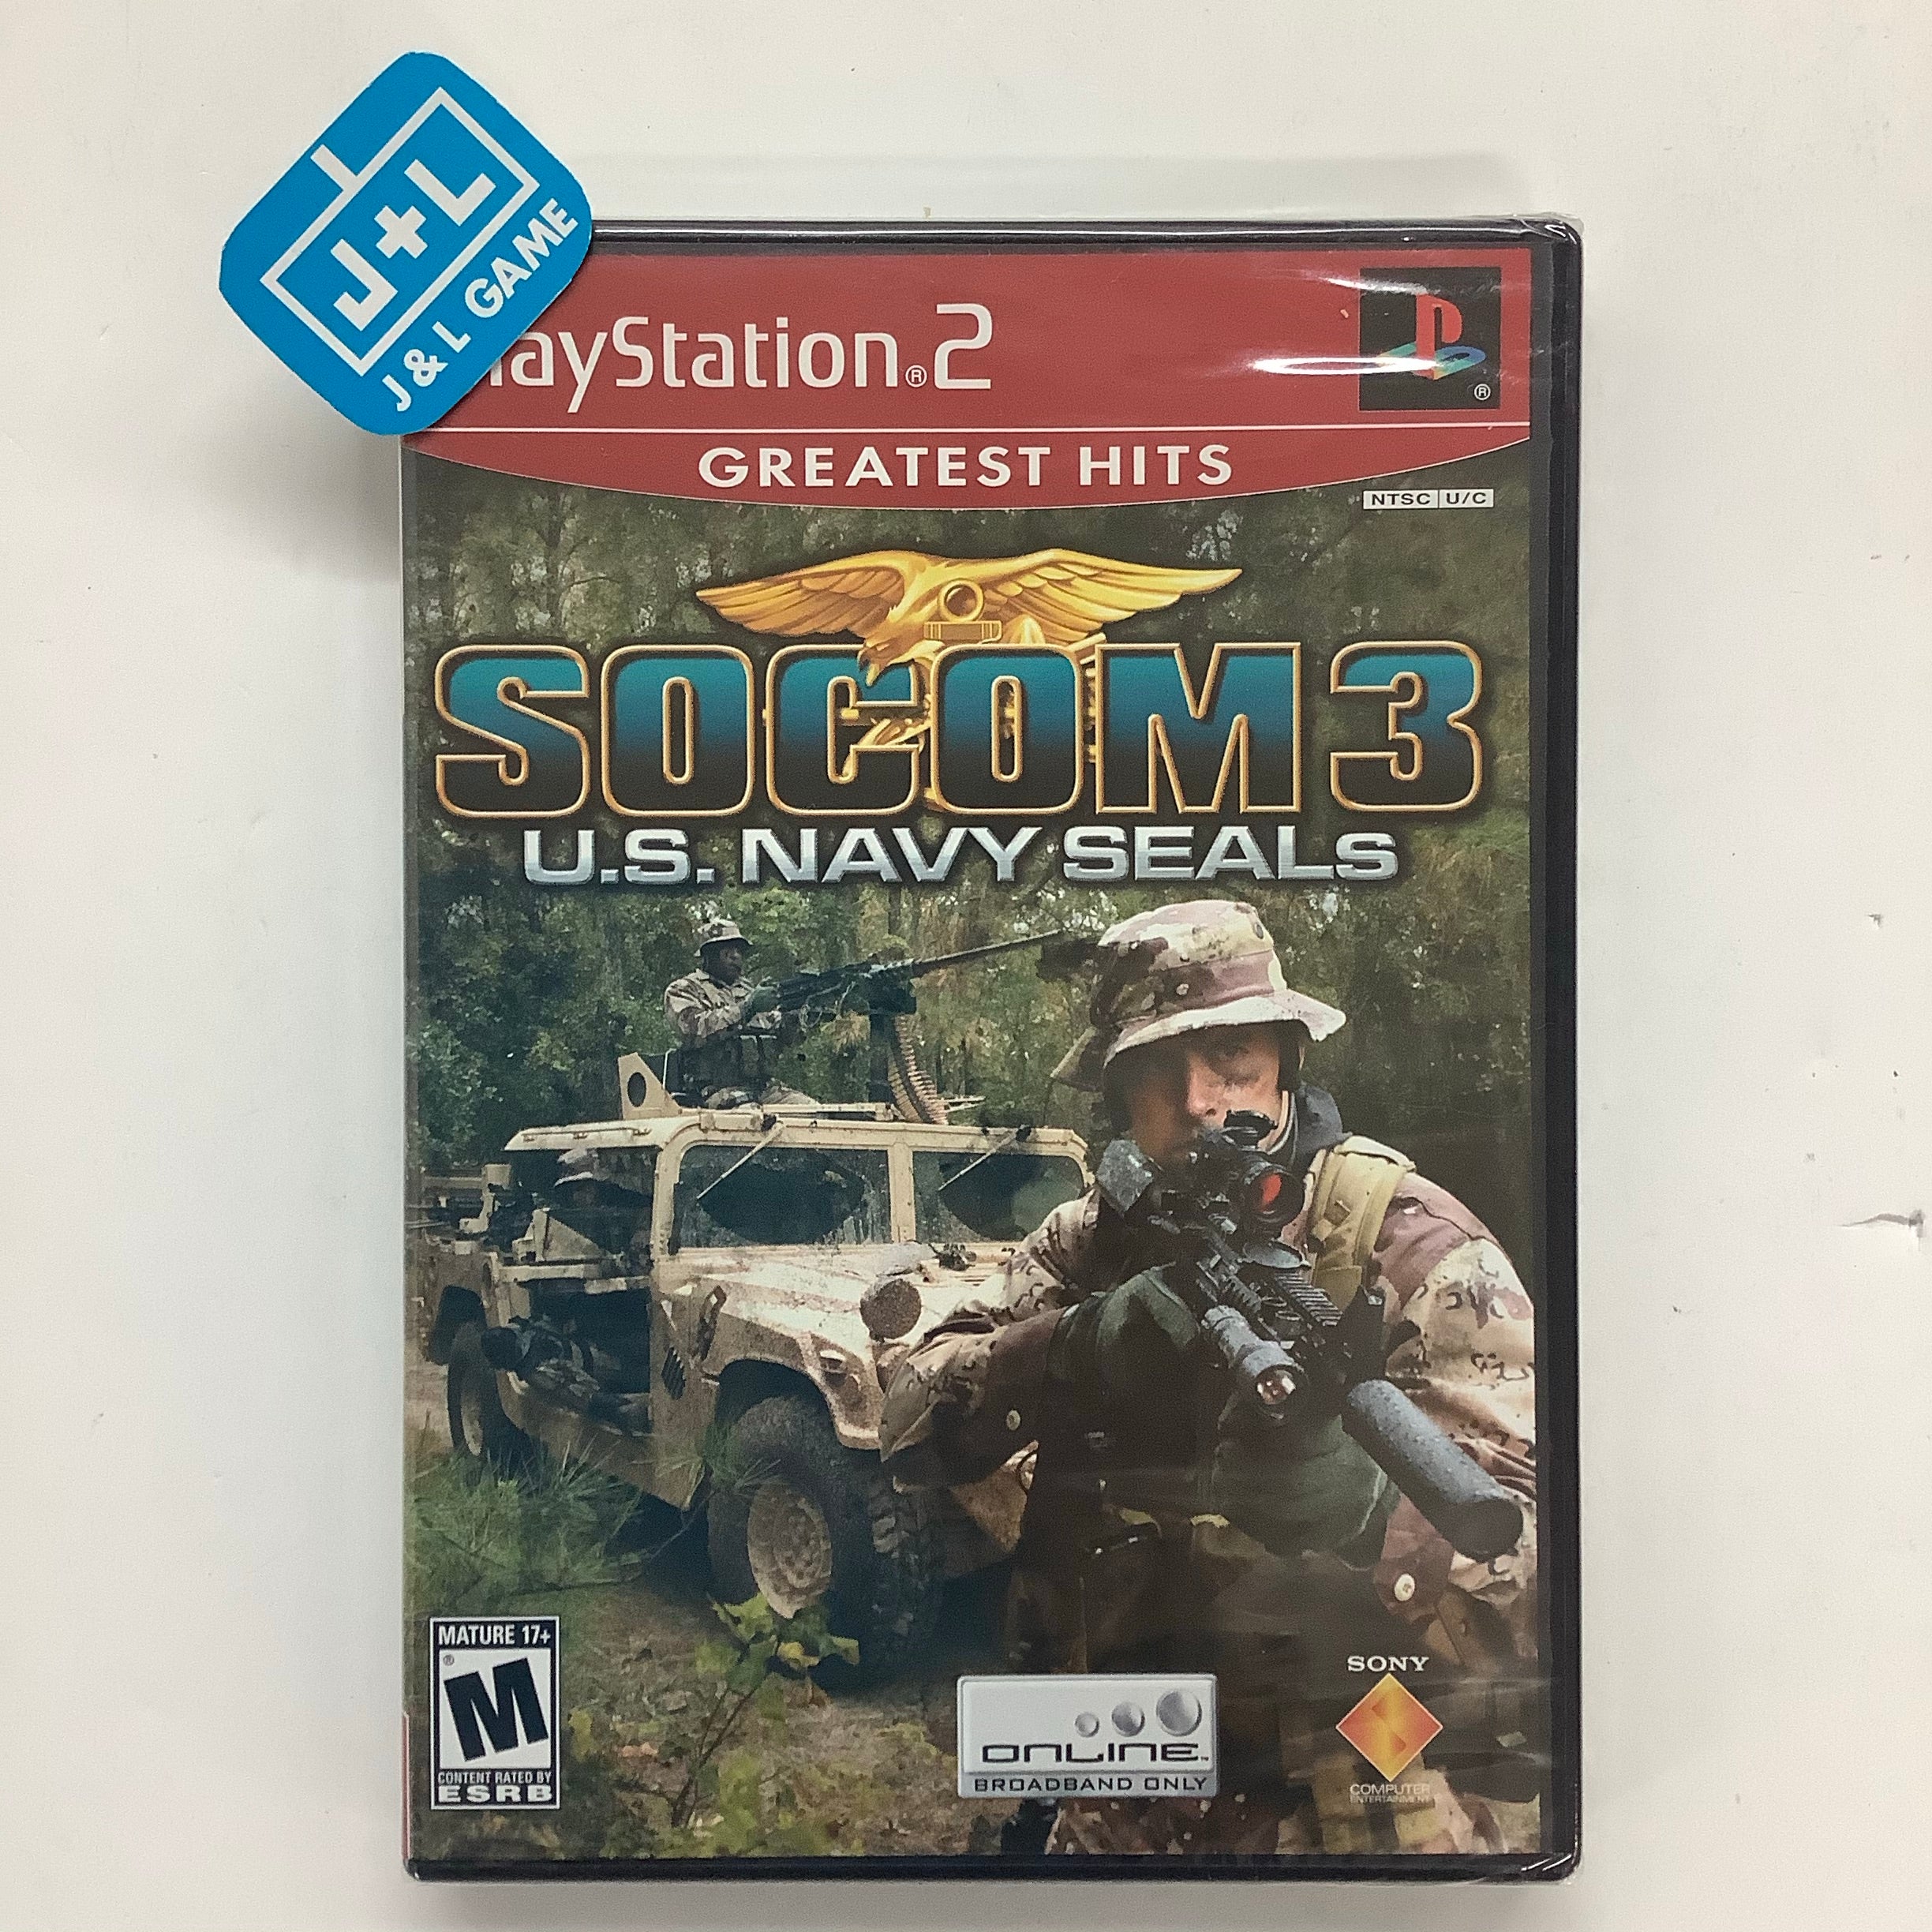 SOCOM: U.S. Navy SEALs Fireteam Bravo 2 - Sony PSP [Pre-Owned]